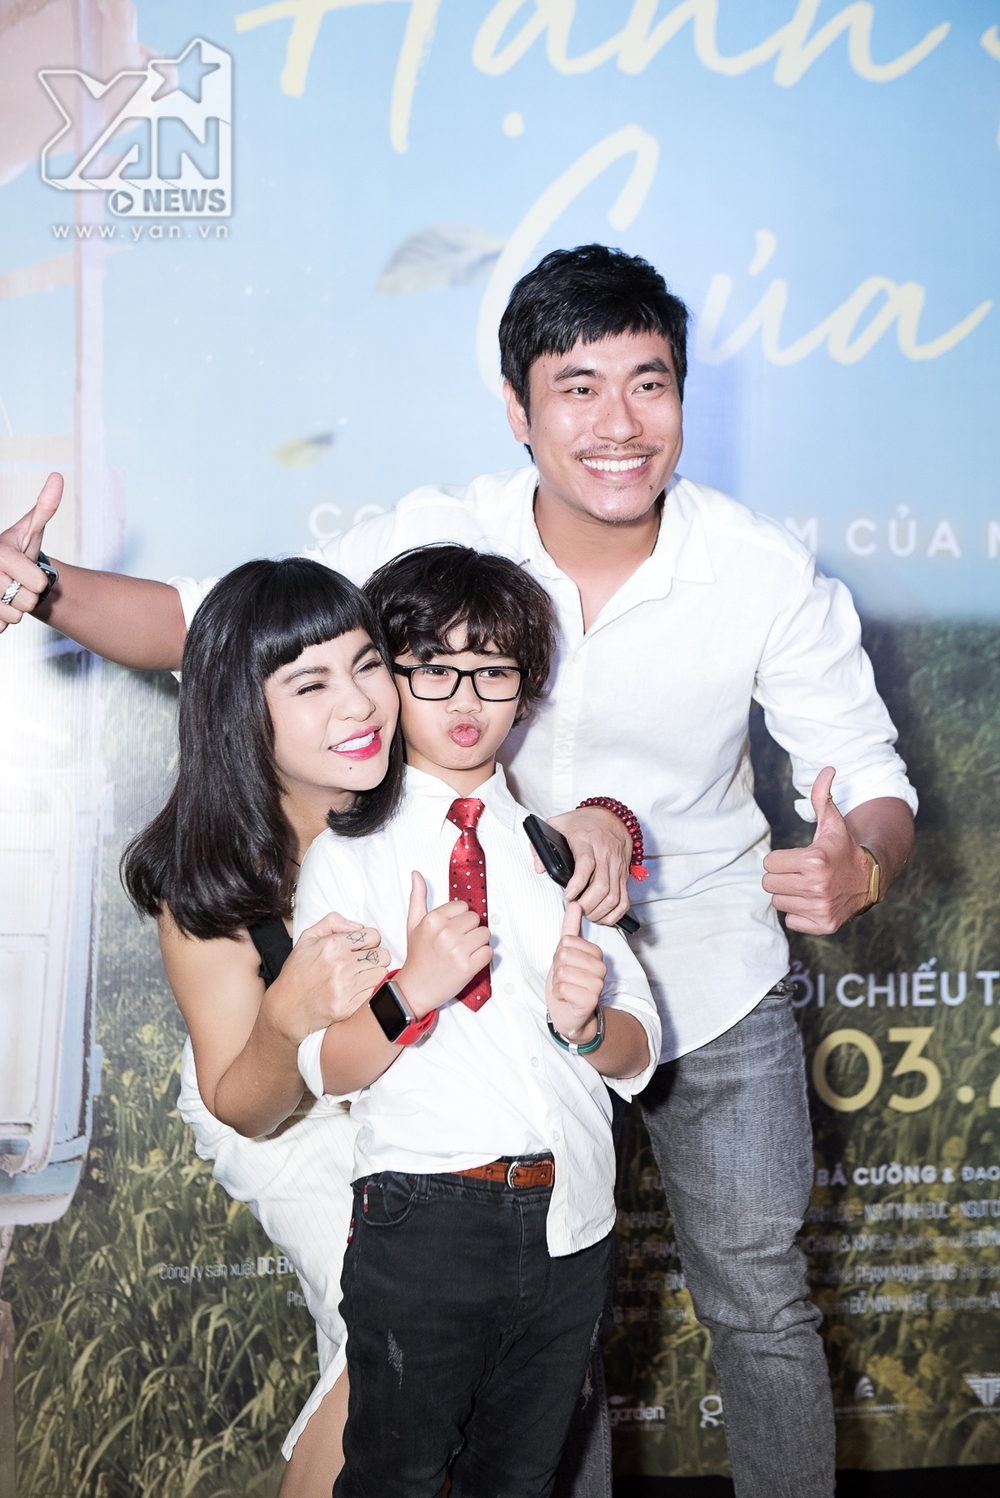 
Cả 2 vui mừng khi gặp lại cậu con trai trên phim của mình là bé Huy Khang